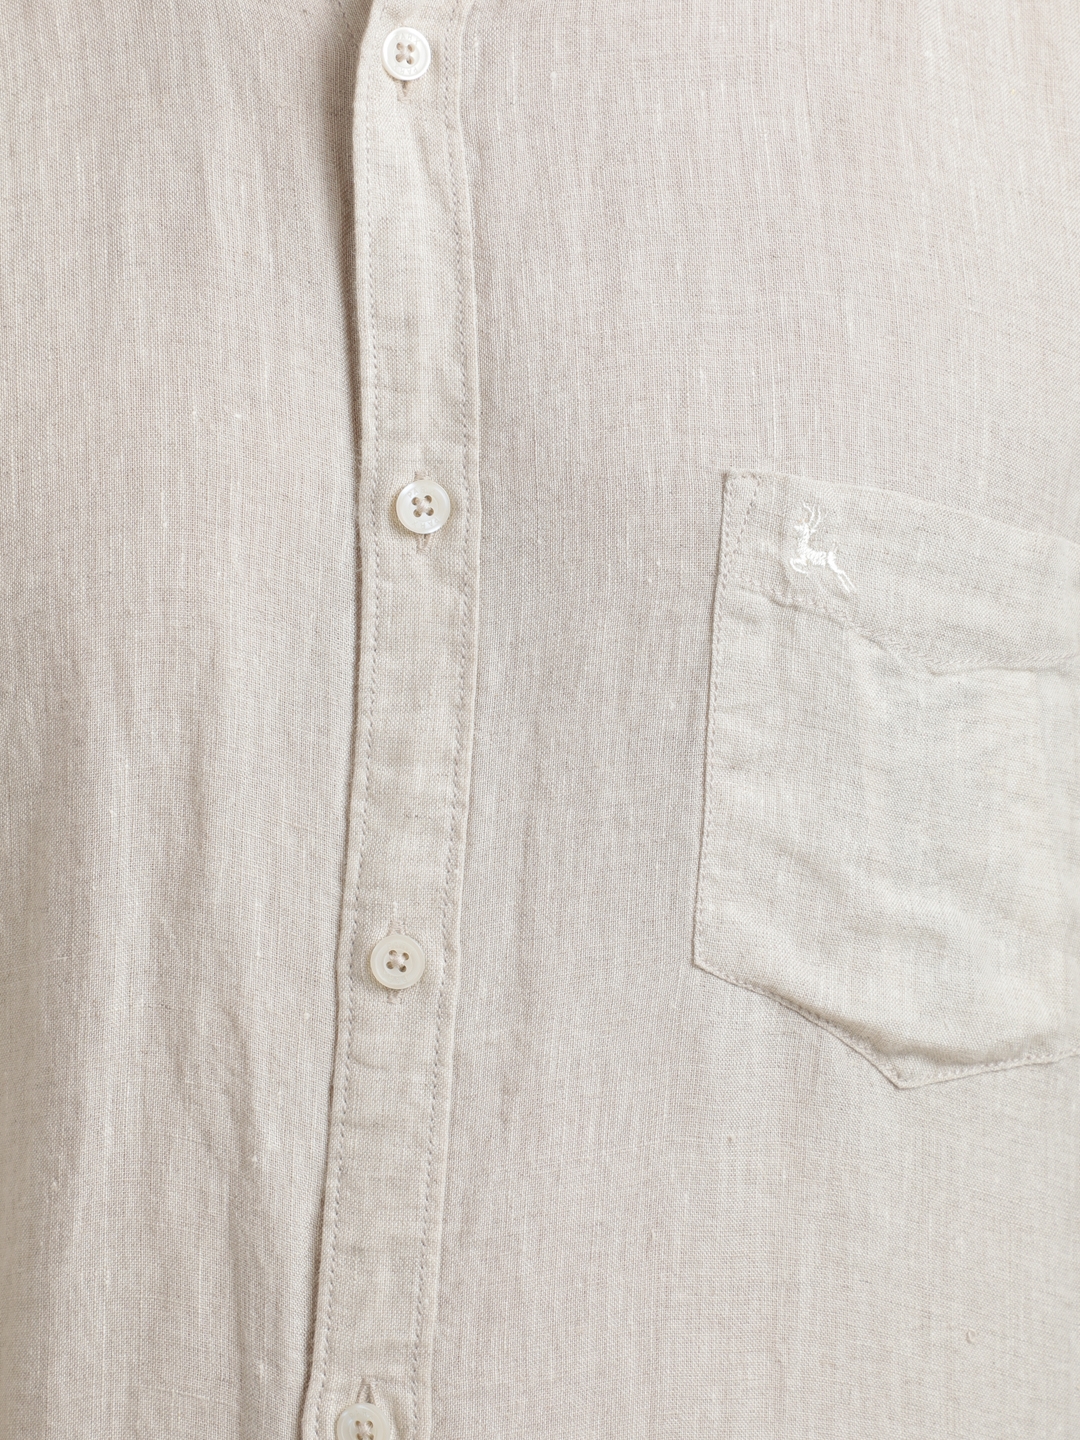 PARX | PARX Medium Brown Shirt 6